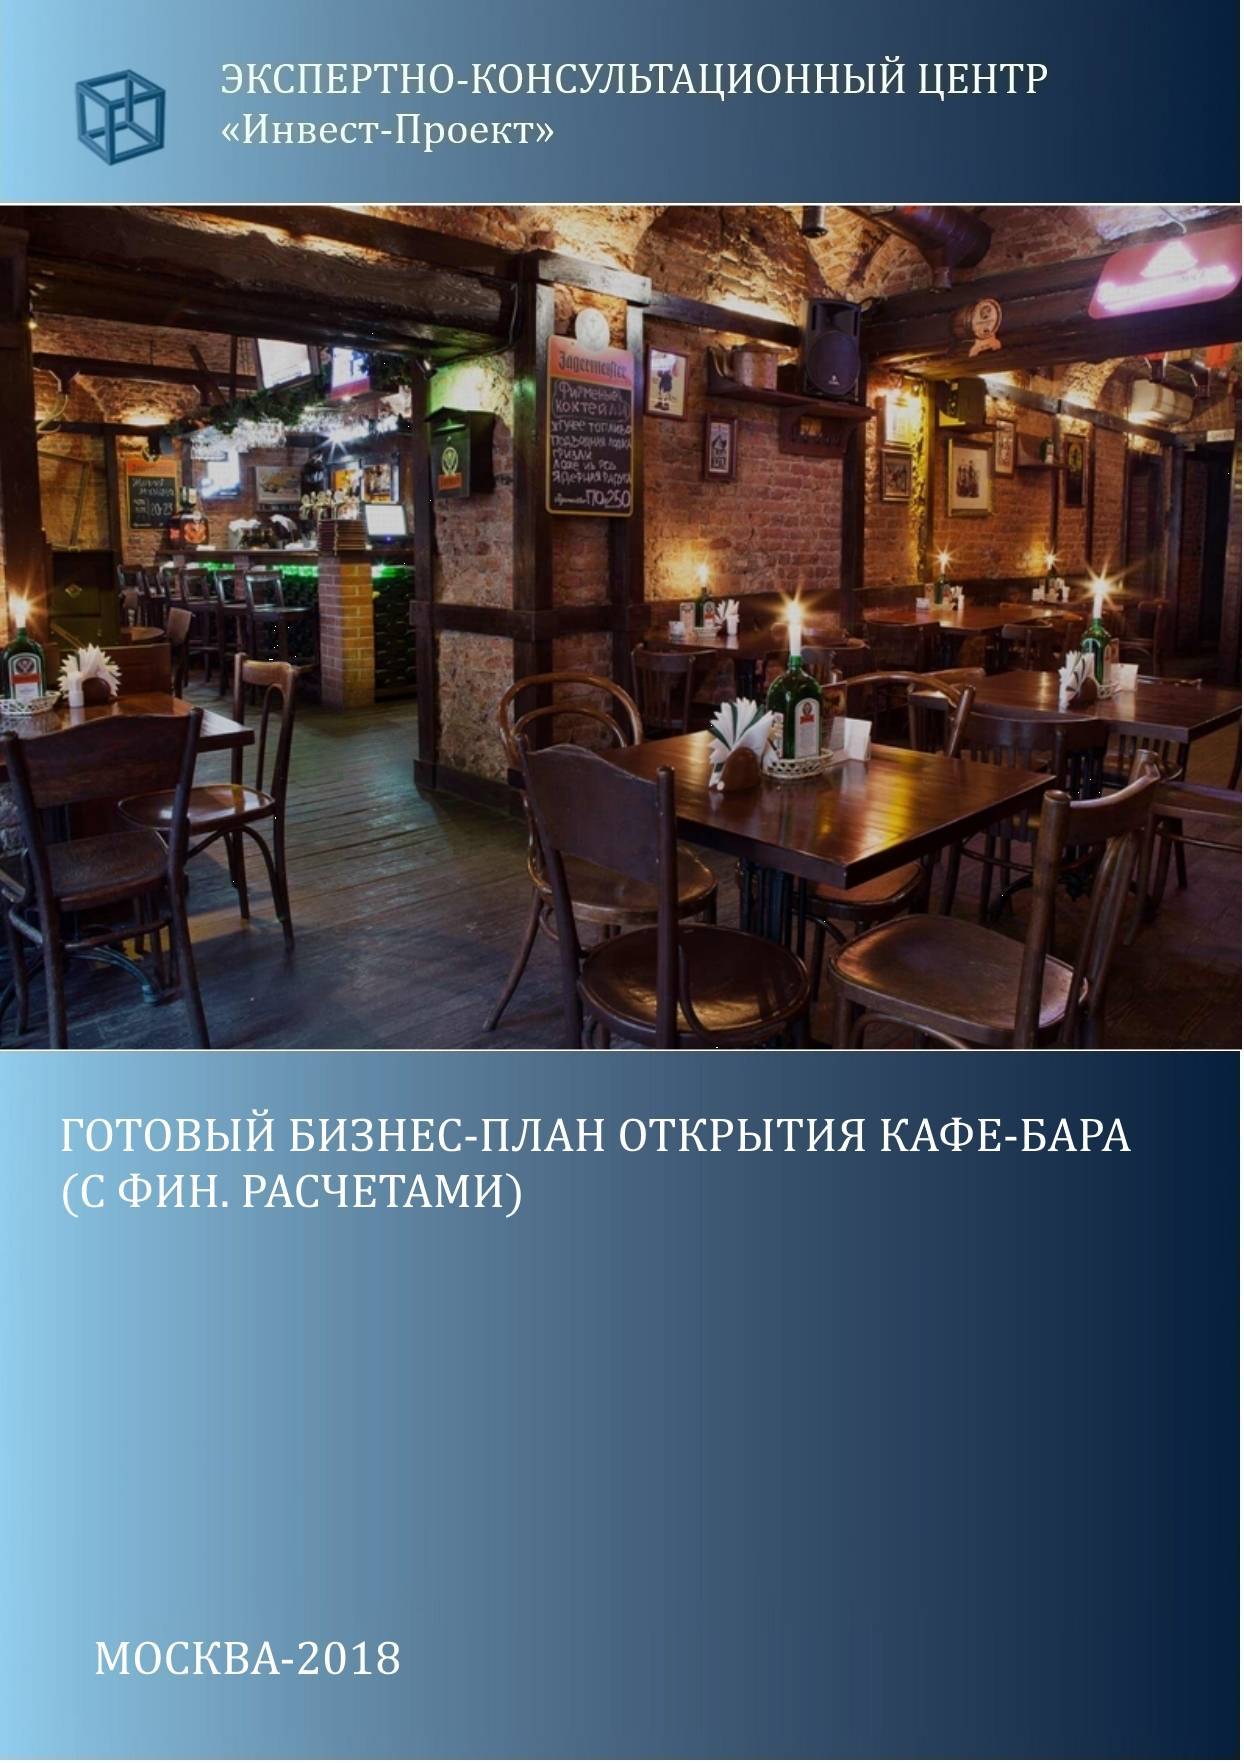 Ресторанный бизнес: как открыть свое кафе с нуля. как открыть свой ресторан или кафе. получение лицензии и реклама :: businessman.ru